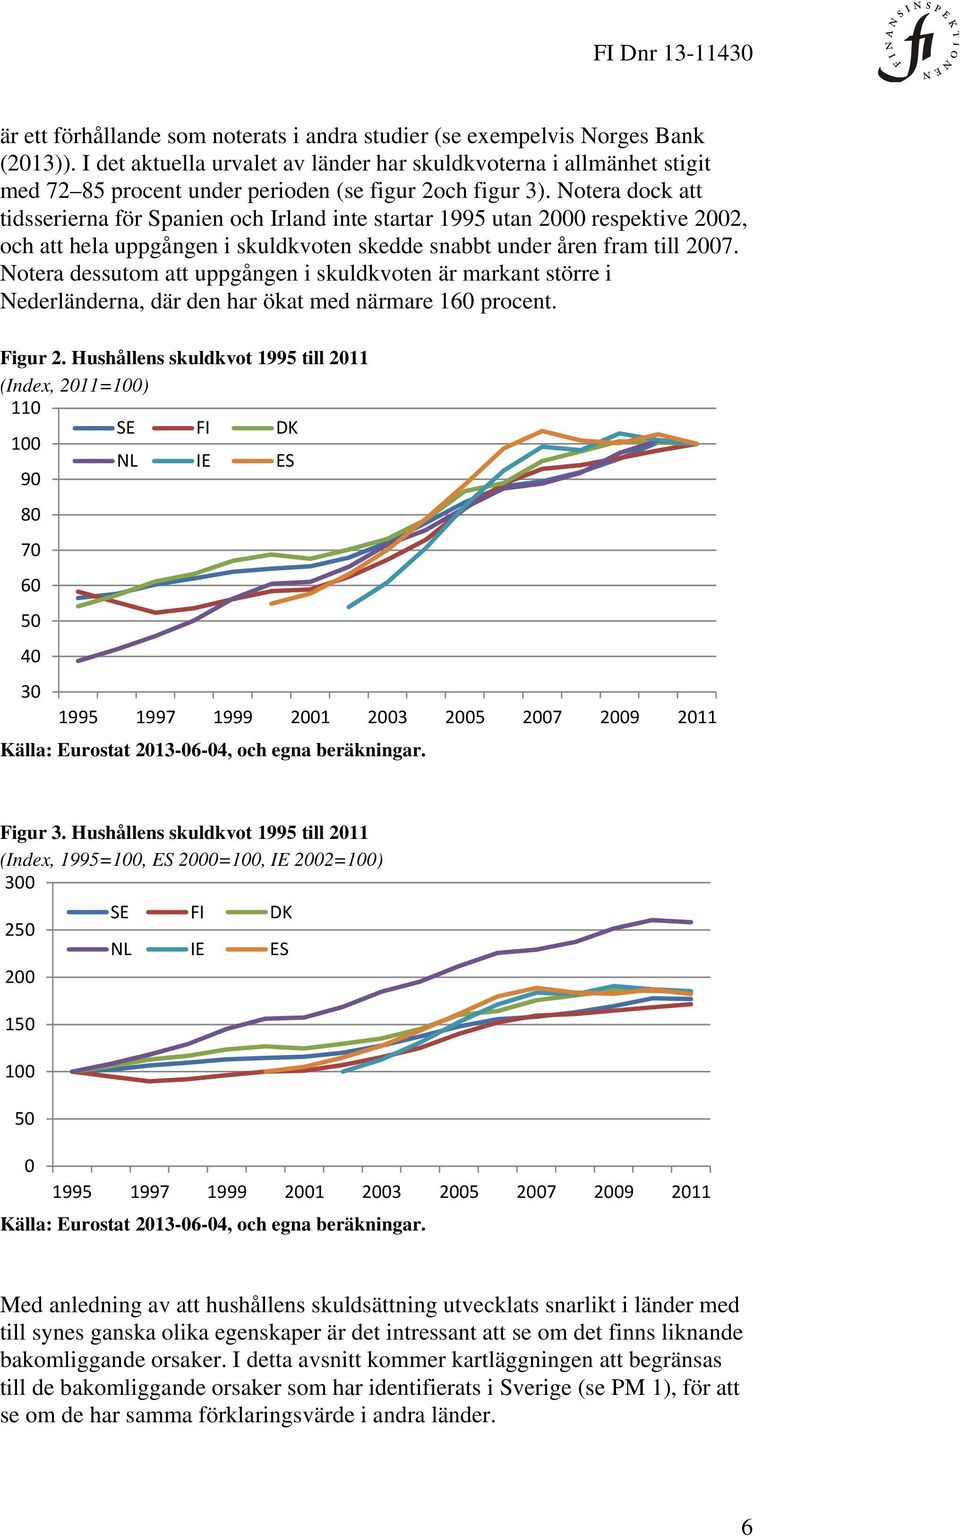 Notera dock att tidsserierna för Spanien och Irland inte startar 1995 utan 2000 respektive 2002, och att hela uppgången i skuldkvoten skedde snabbt under åren fram till 2007.